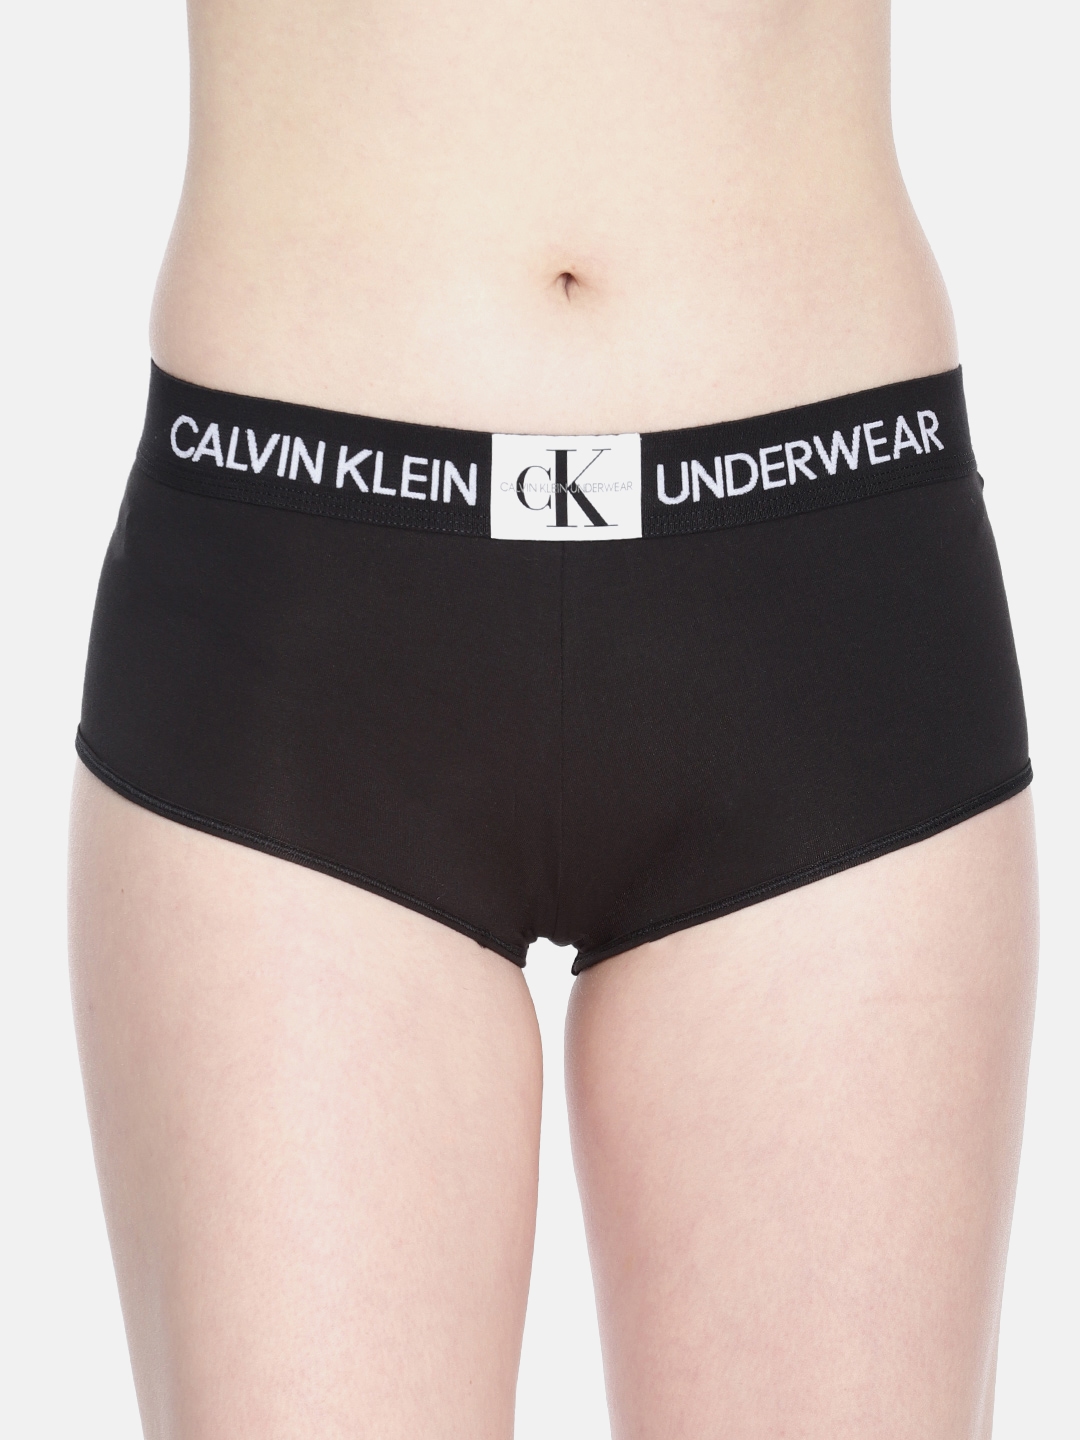 Buy Calvin Klein Underwear Women Black Solid Boy Shorts QF4922001 - Briefs  for Women 10173435